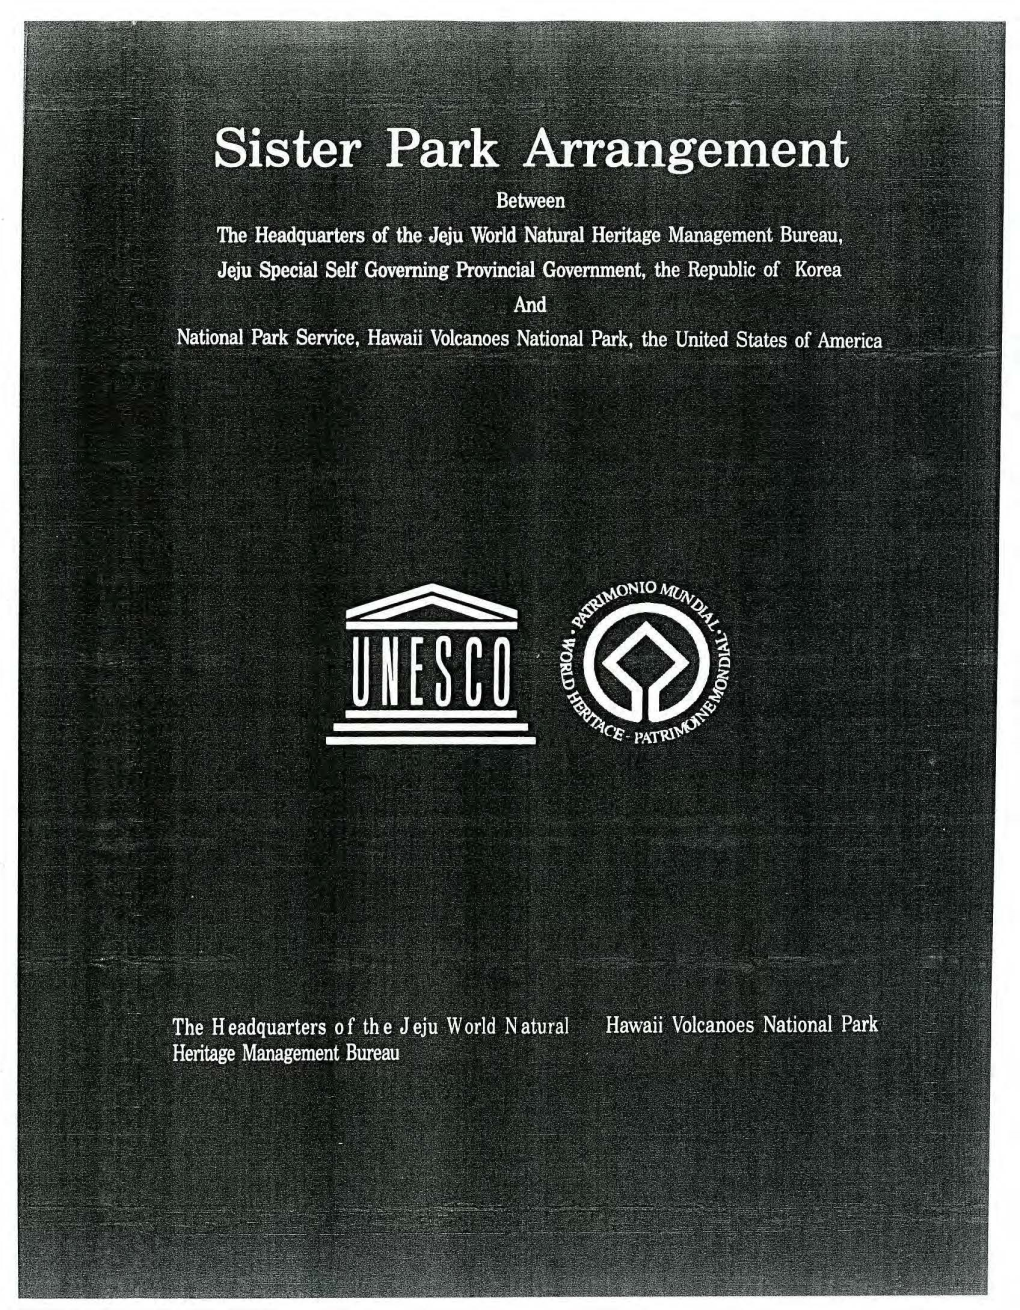 Sister Park Agreement